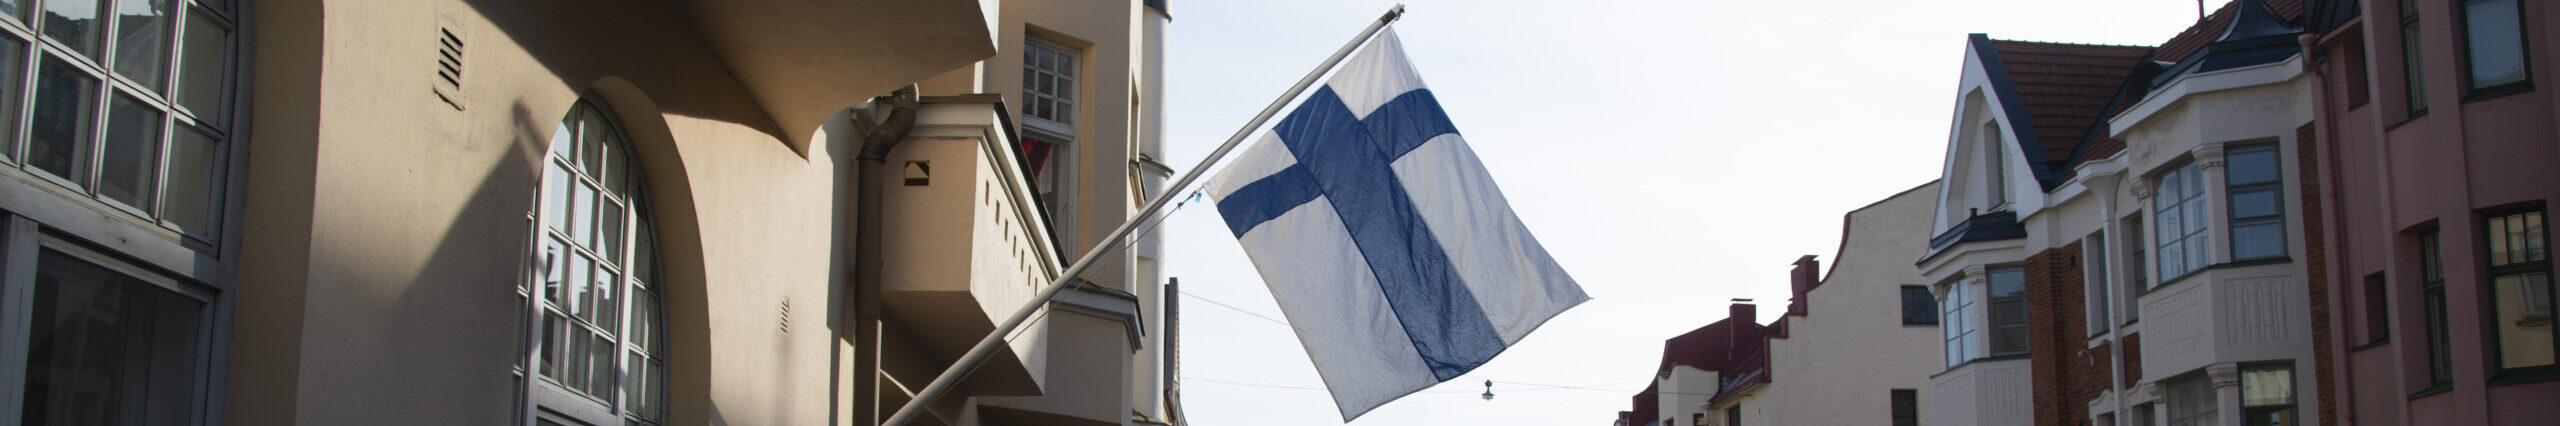 Fotograf: Jarno Mela Bildbanken Finland Finlands flagga vajar på en gata med gamla hus.